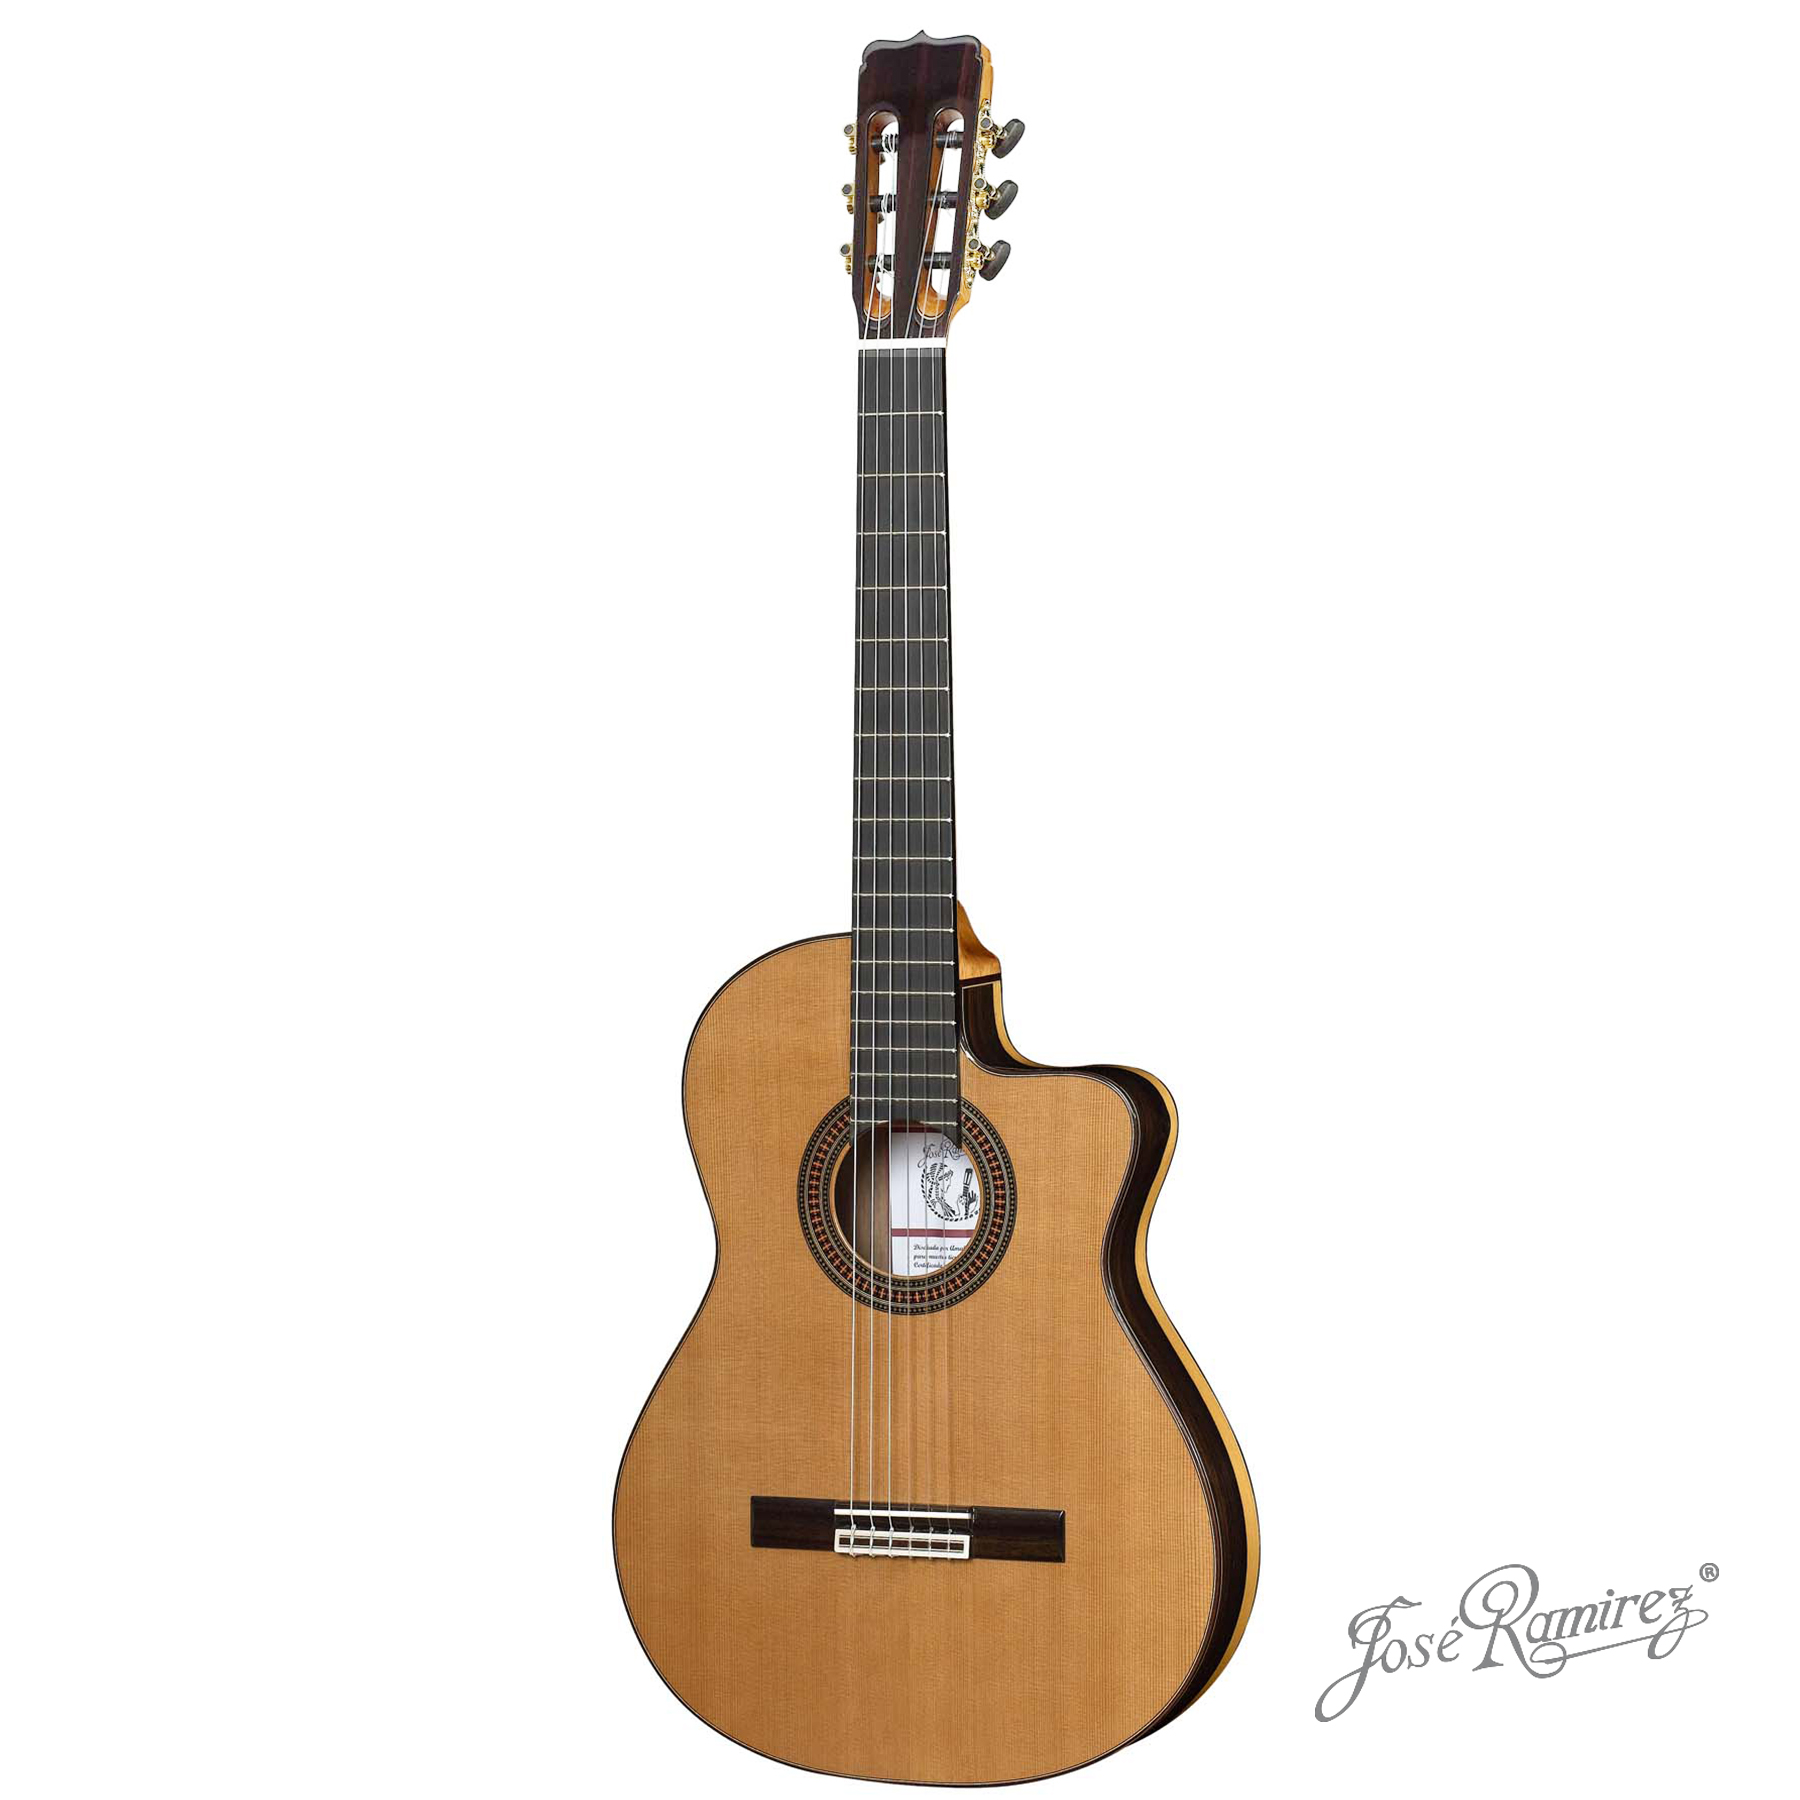 Guitarra de estudio OLZCWE de diseño exclusivo Ramírez